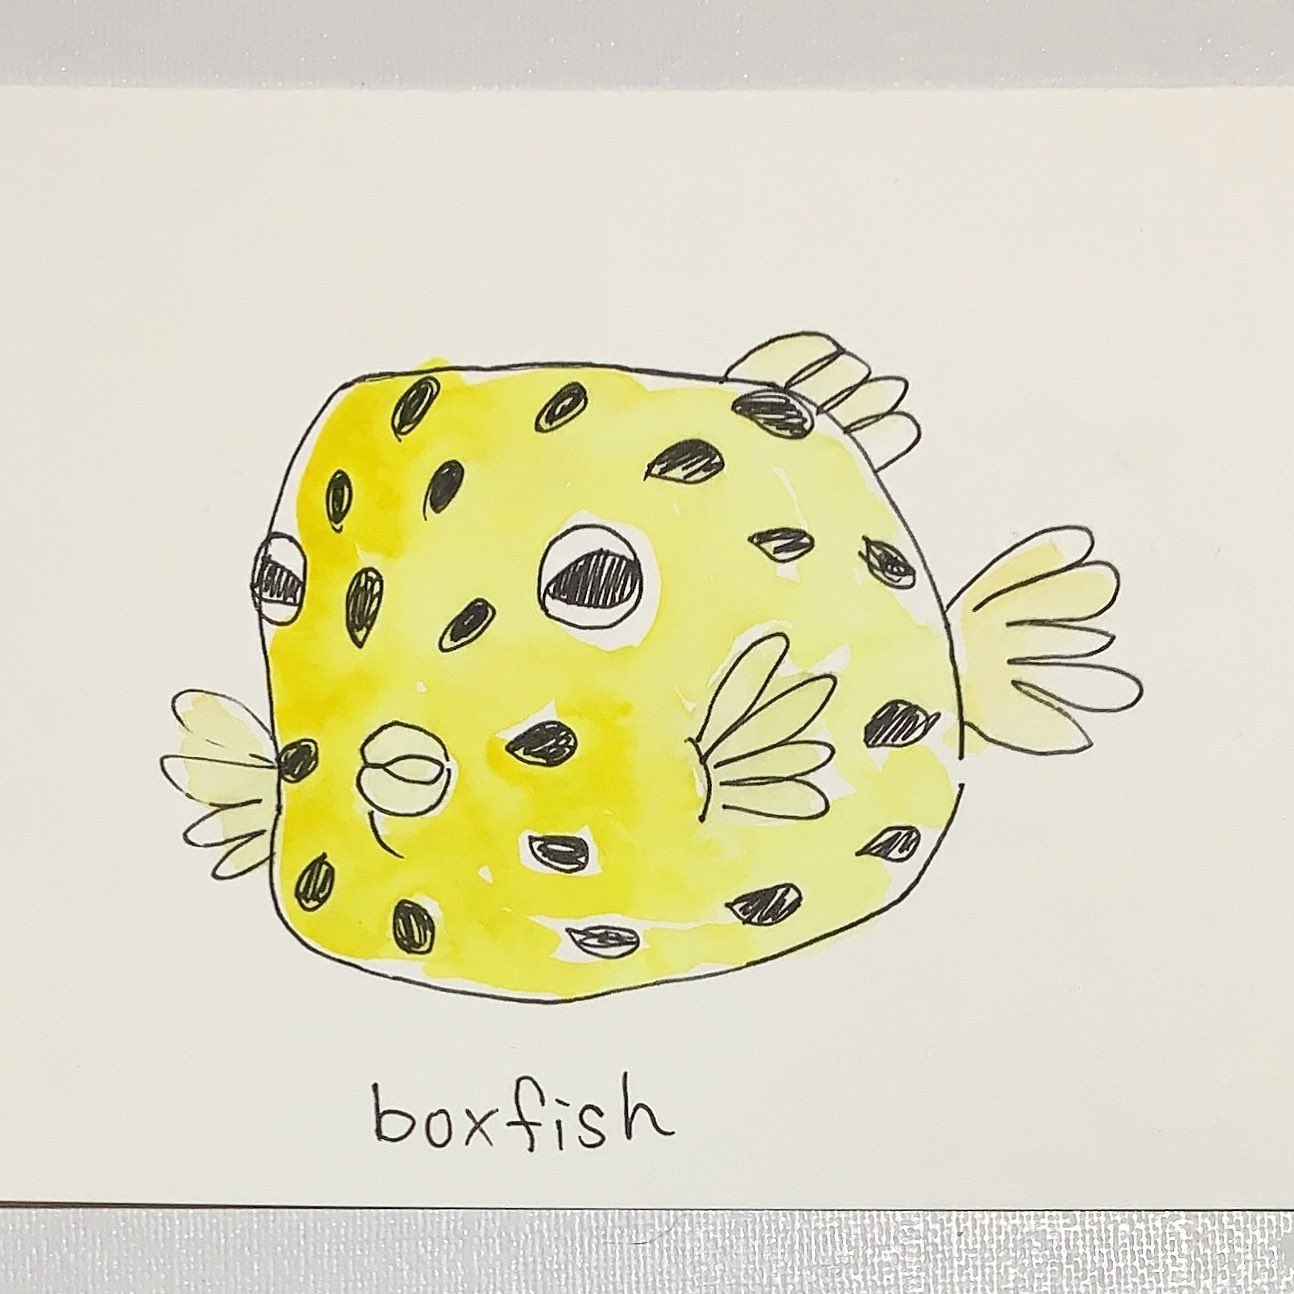 Miho Waseda 最近 海の生き物をよくみてる ちょっと怒ったような表情が 可愛い Boxfish ボックスフィッシュ 手描き イラスト好きと繋がりたい えかきさんと繋がりたい イラスト Illustration さかないらすと T Co Exxcqjbxgs Twitter